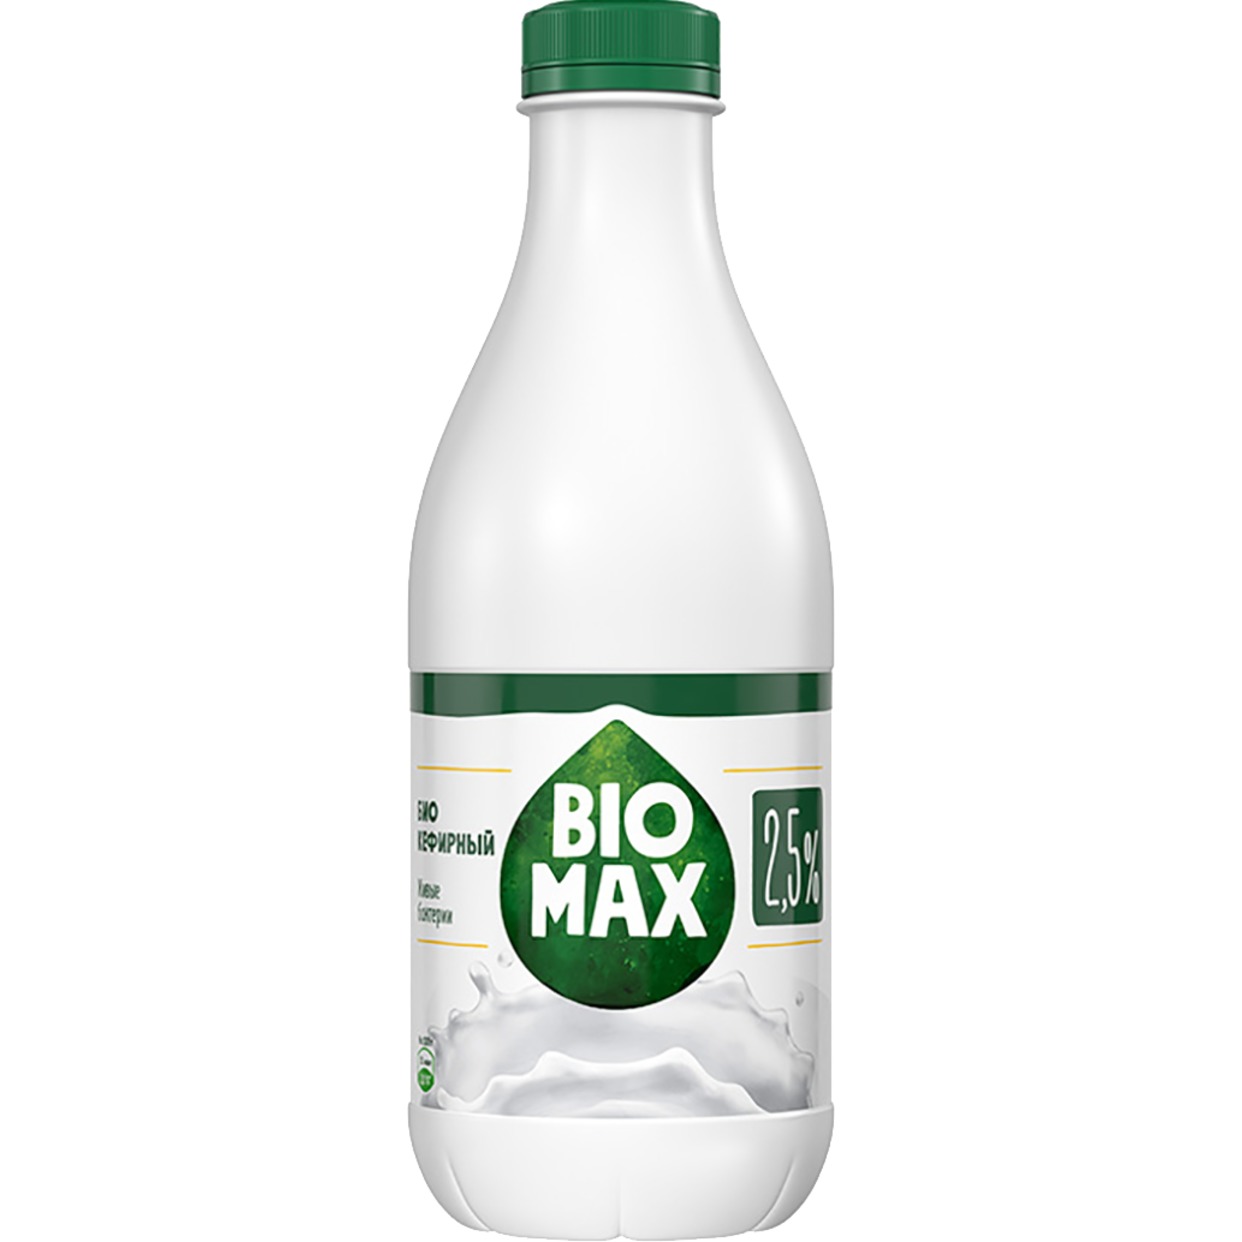 Продукт кефирный BioMax Эффективный 2,5% 950 мл по акции в Пятерочке